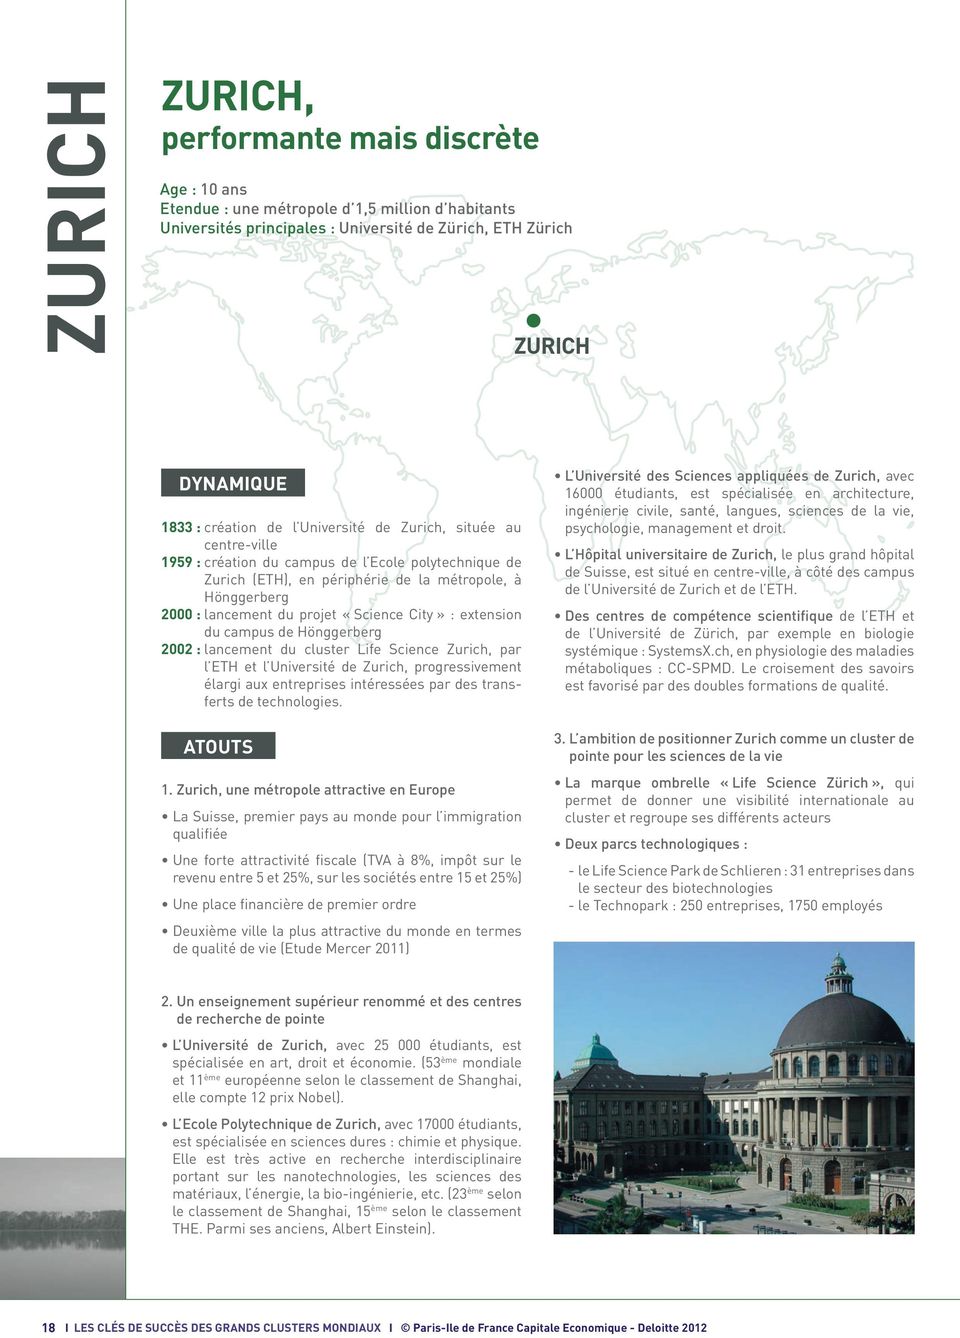 City» : extension du campus de Hönggerberg 2002 : lancement du cluster Life Science Zurich, par l ETH et l Université de Zurich, progressivement élargi aux entreprises intéressées par des transferts